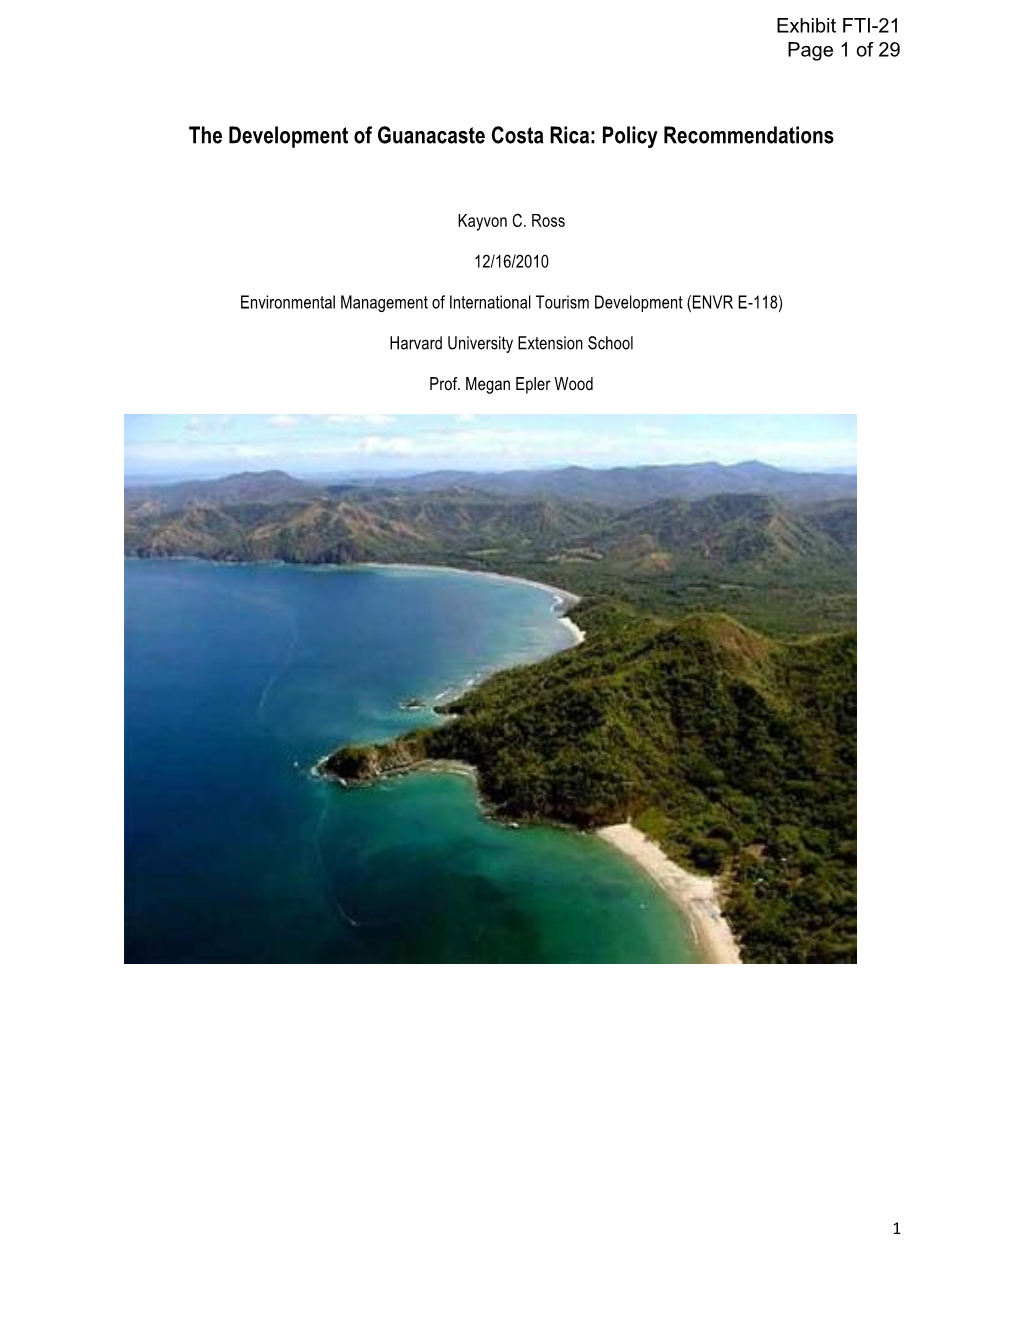 Guanacaste Destination Management. Final Copy